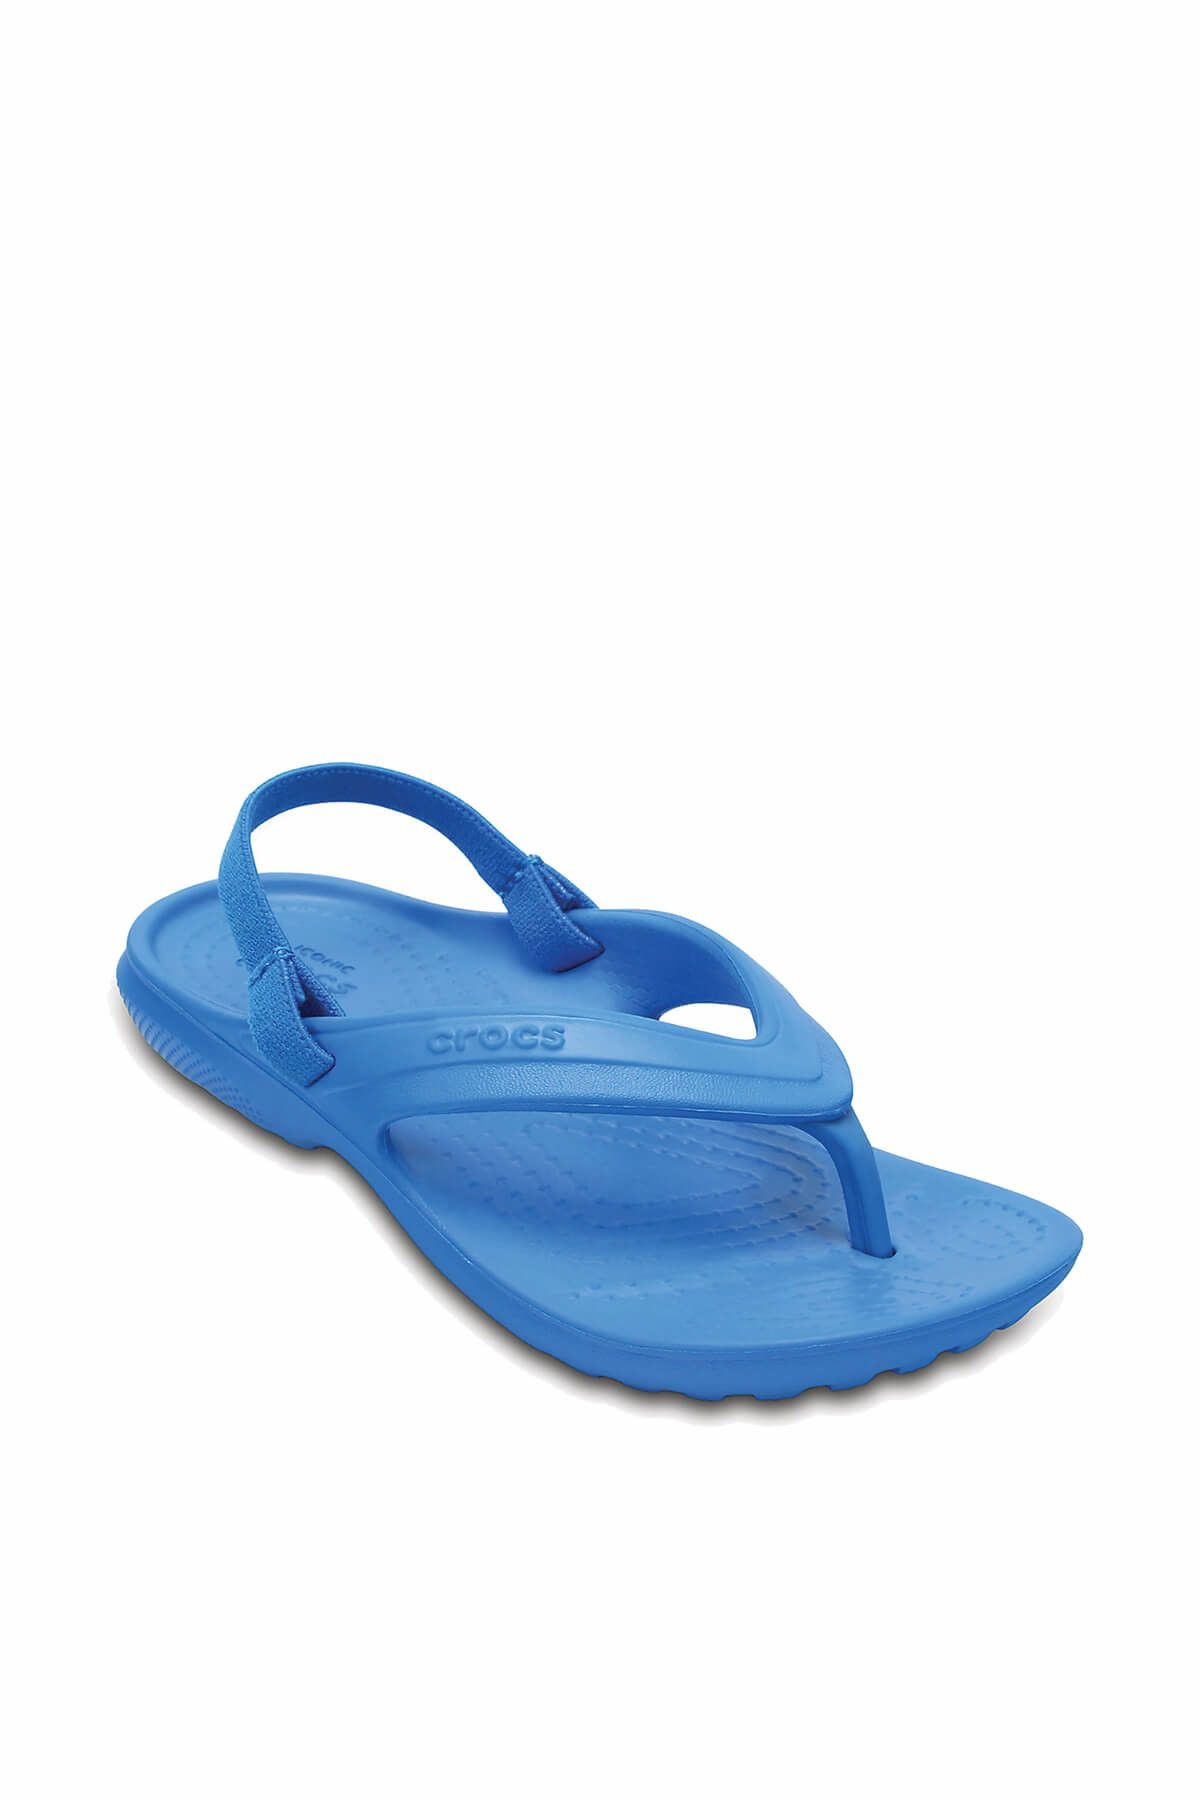 Crocs Mavi Unisex Çocuk Sandalet 202871